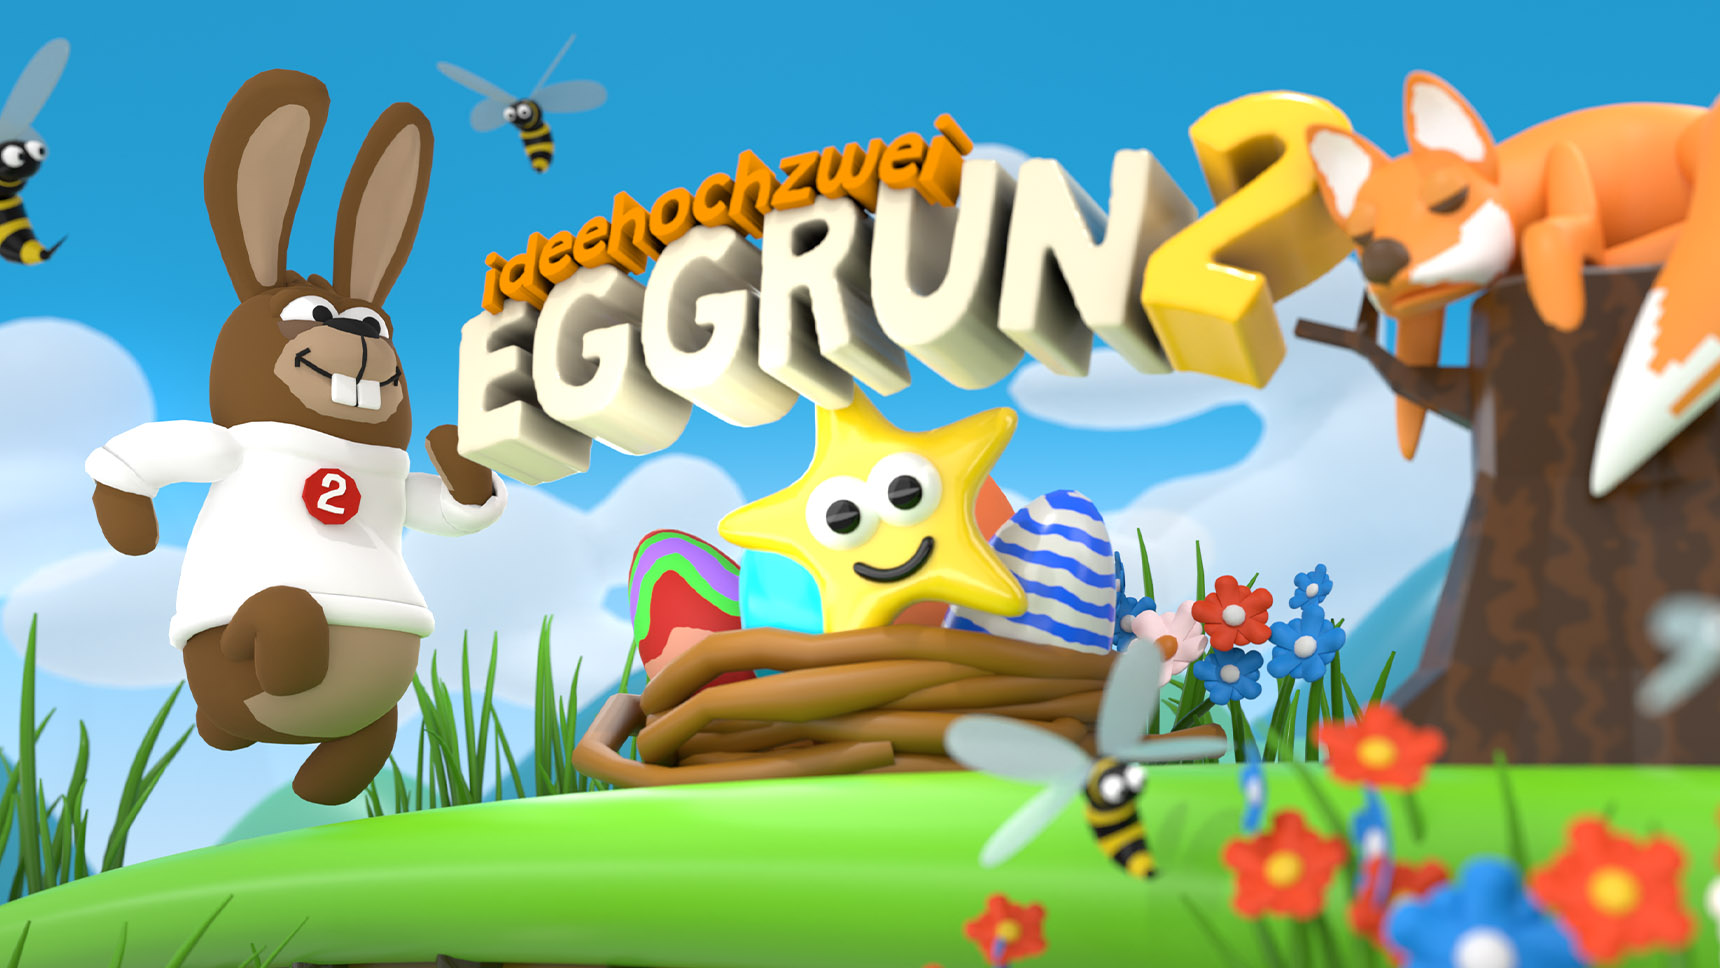 EggRun2 - ideehochzweiosterspiel